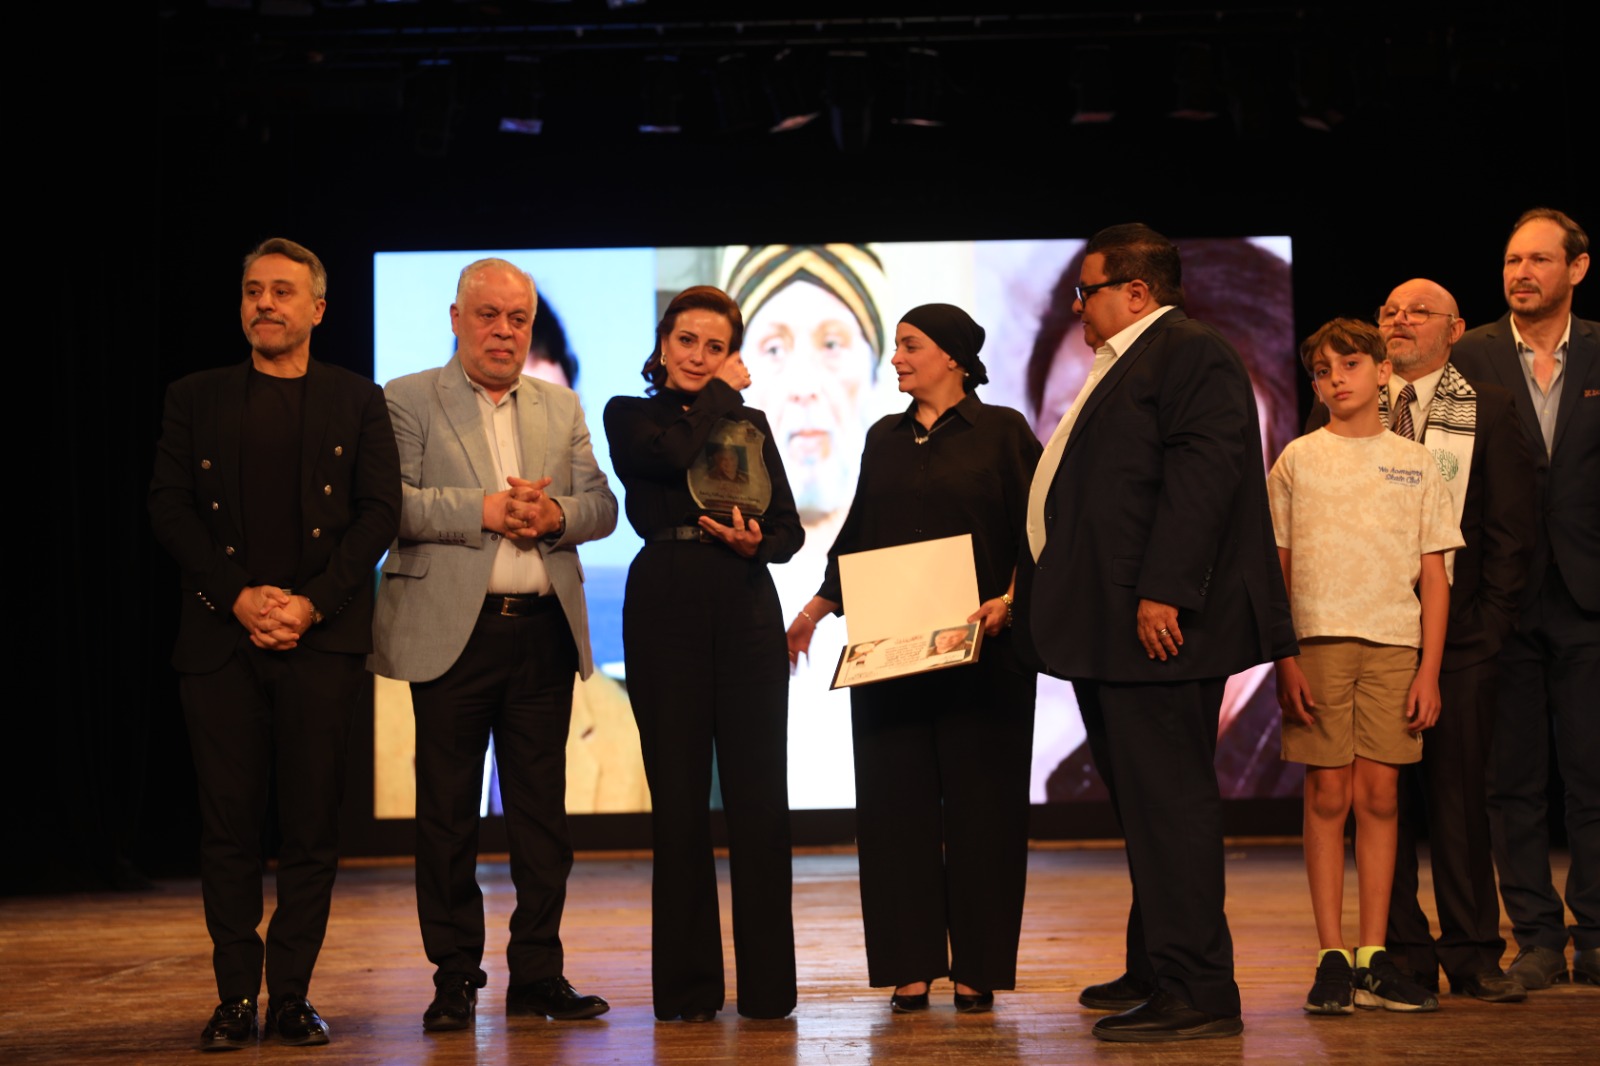  نجوم الفن يشاركون في تكريم المركز القومي للمسرح لاسم الفنان الكبير الراحل أشرف عبد الغفور